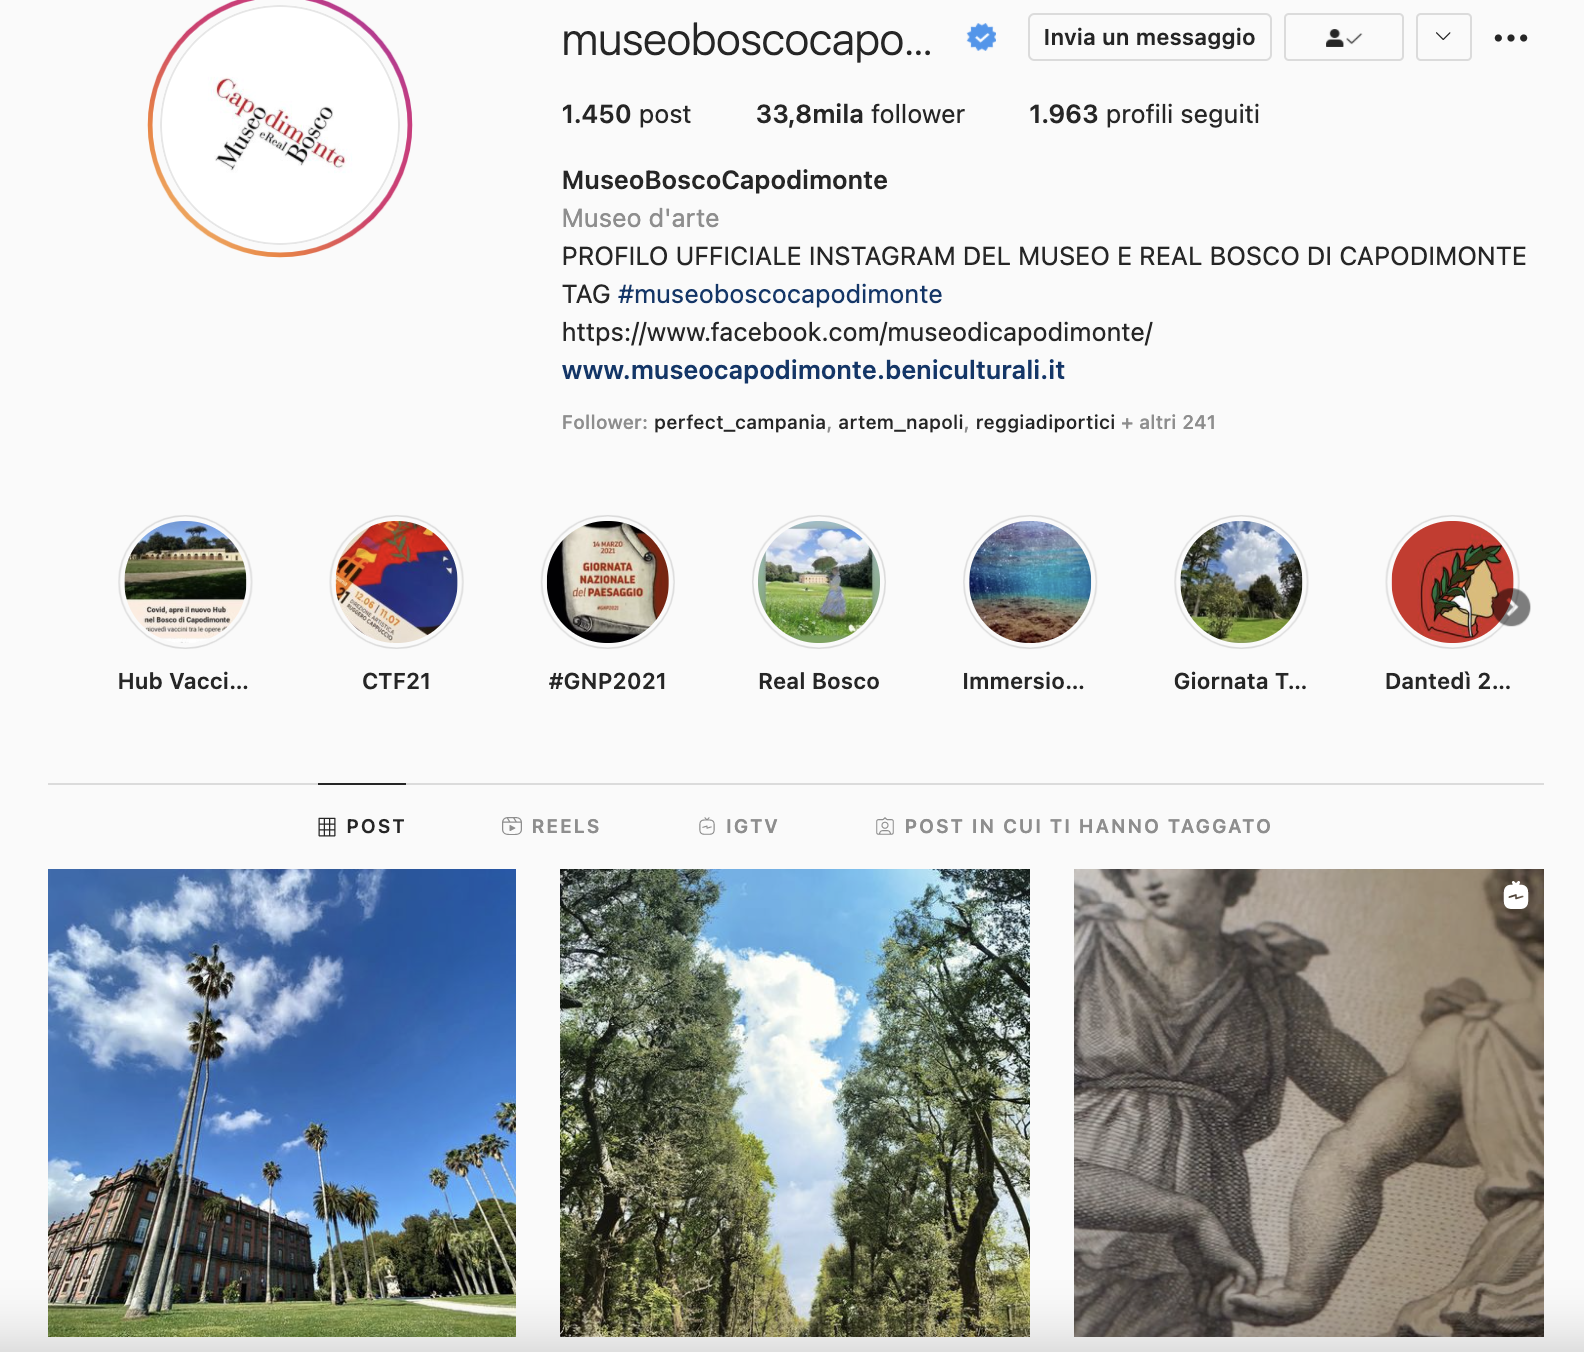 Feed Instagram Museo e Real Bosco di Capodimonte